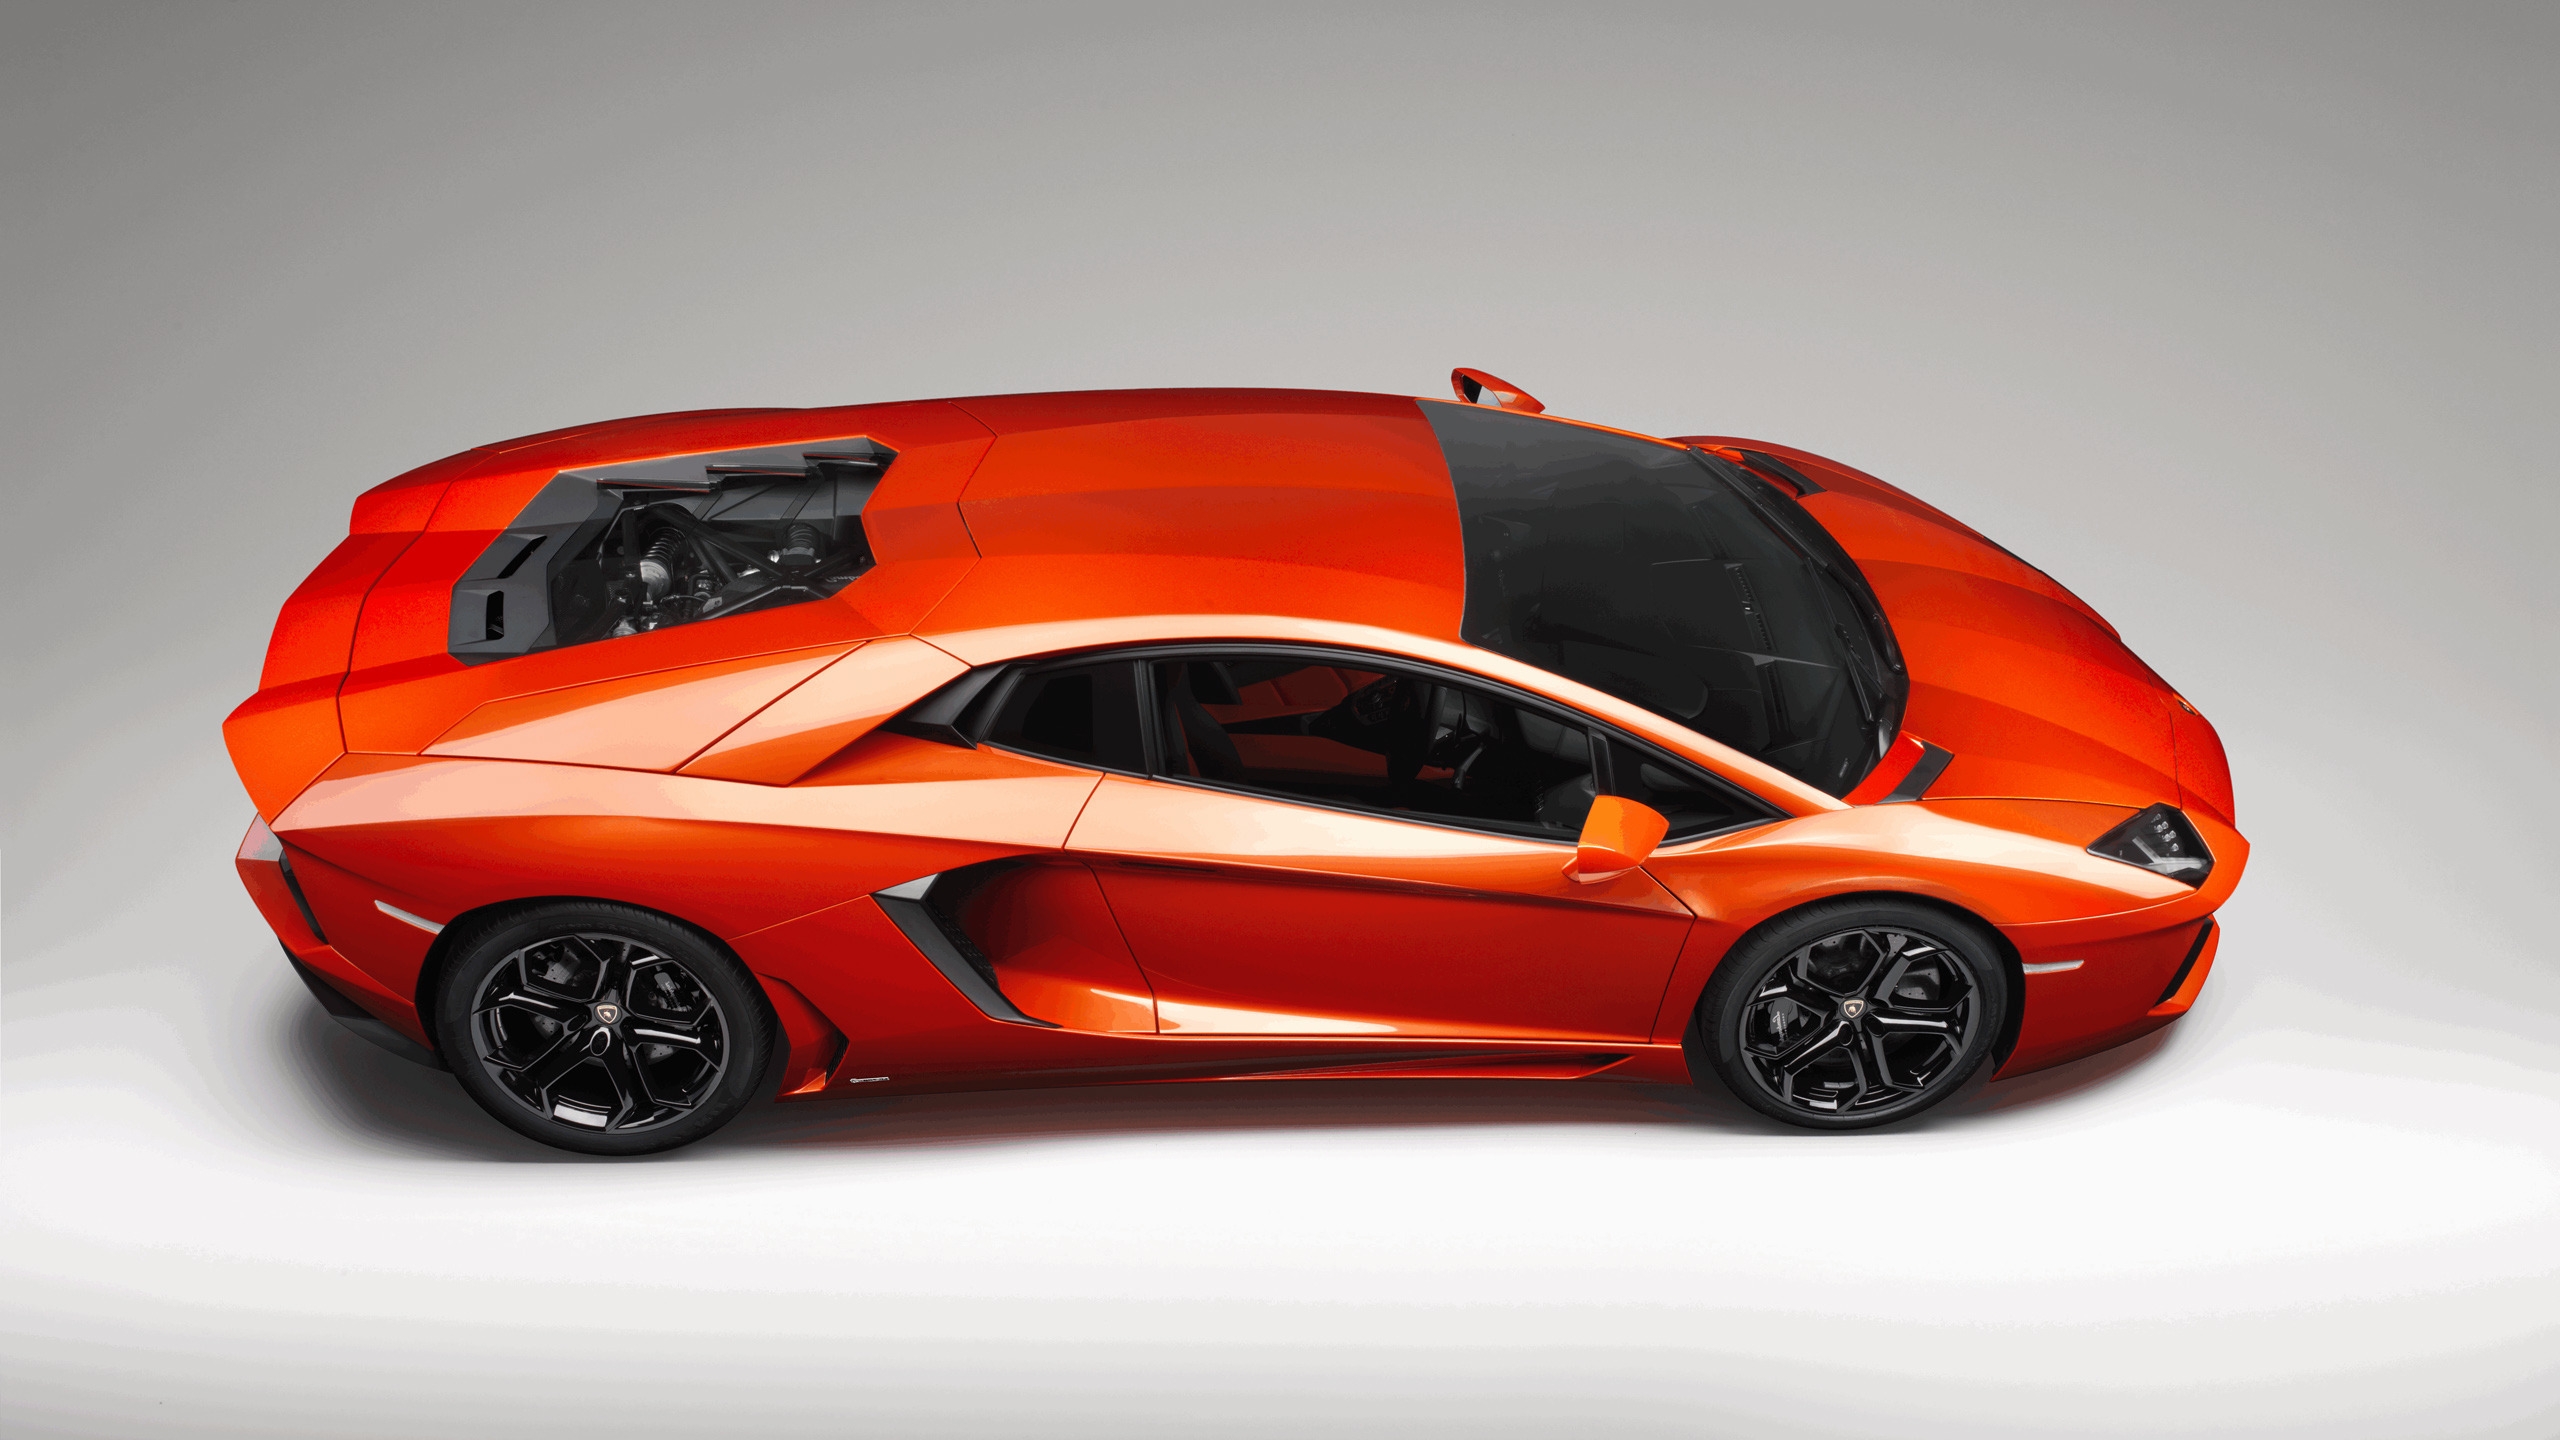 Lamborghini Aventador Studio for 2560x1440 HDTV resolution